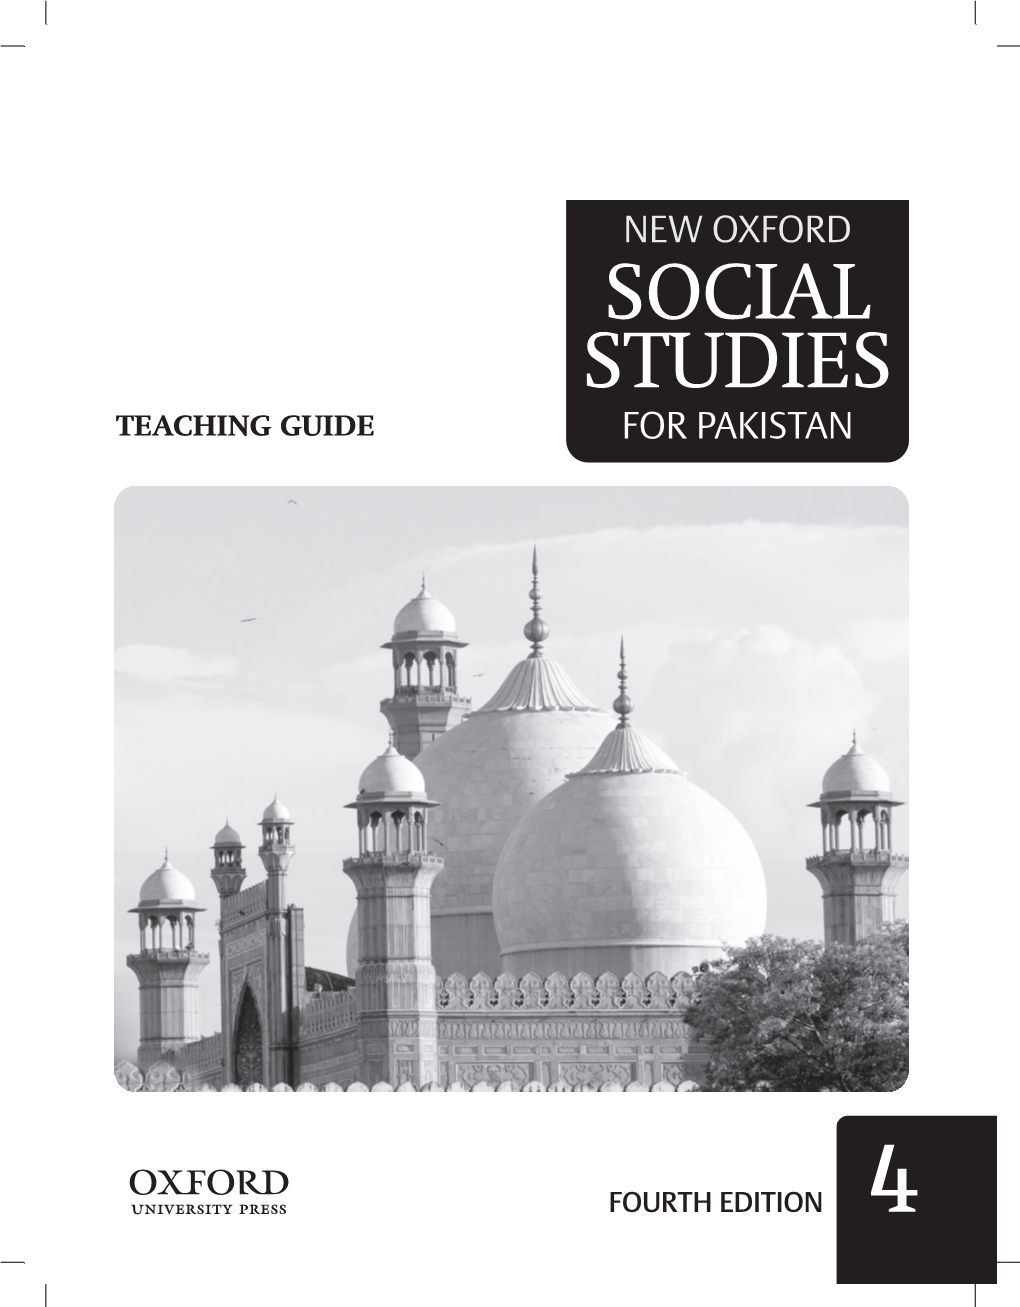 New Oxford Social Studies for Paksitan TG 4.Pdf